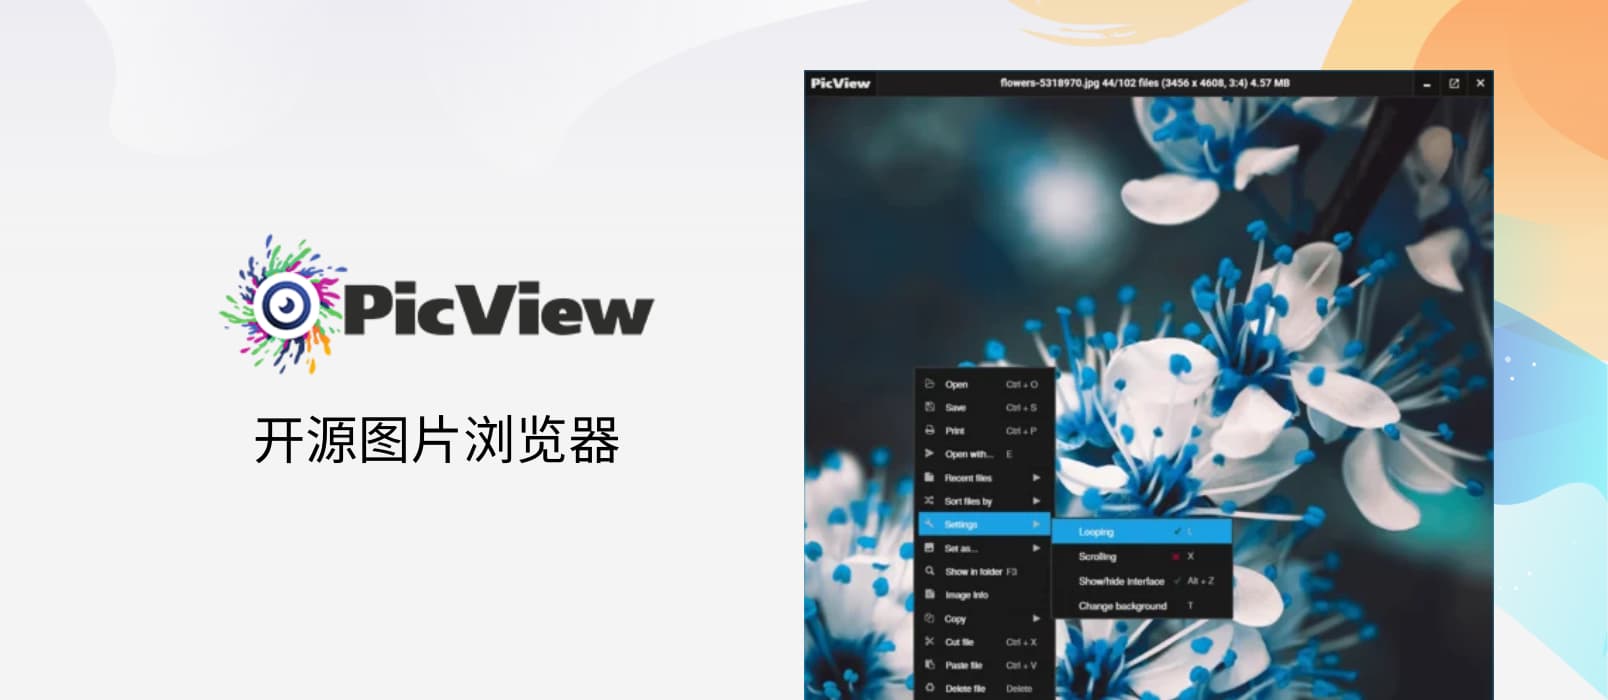 PicView - 开源图片浏览器，可查看压缩包图片，快速、“小巧”[Windows] 1